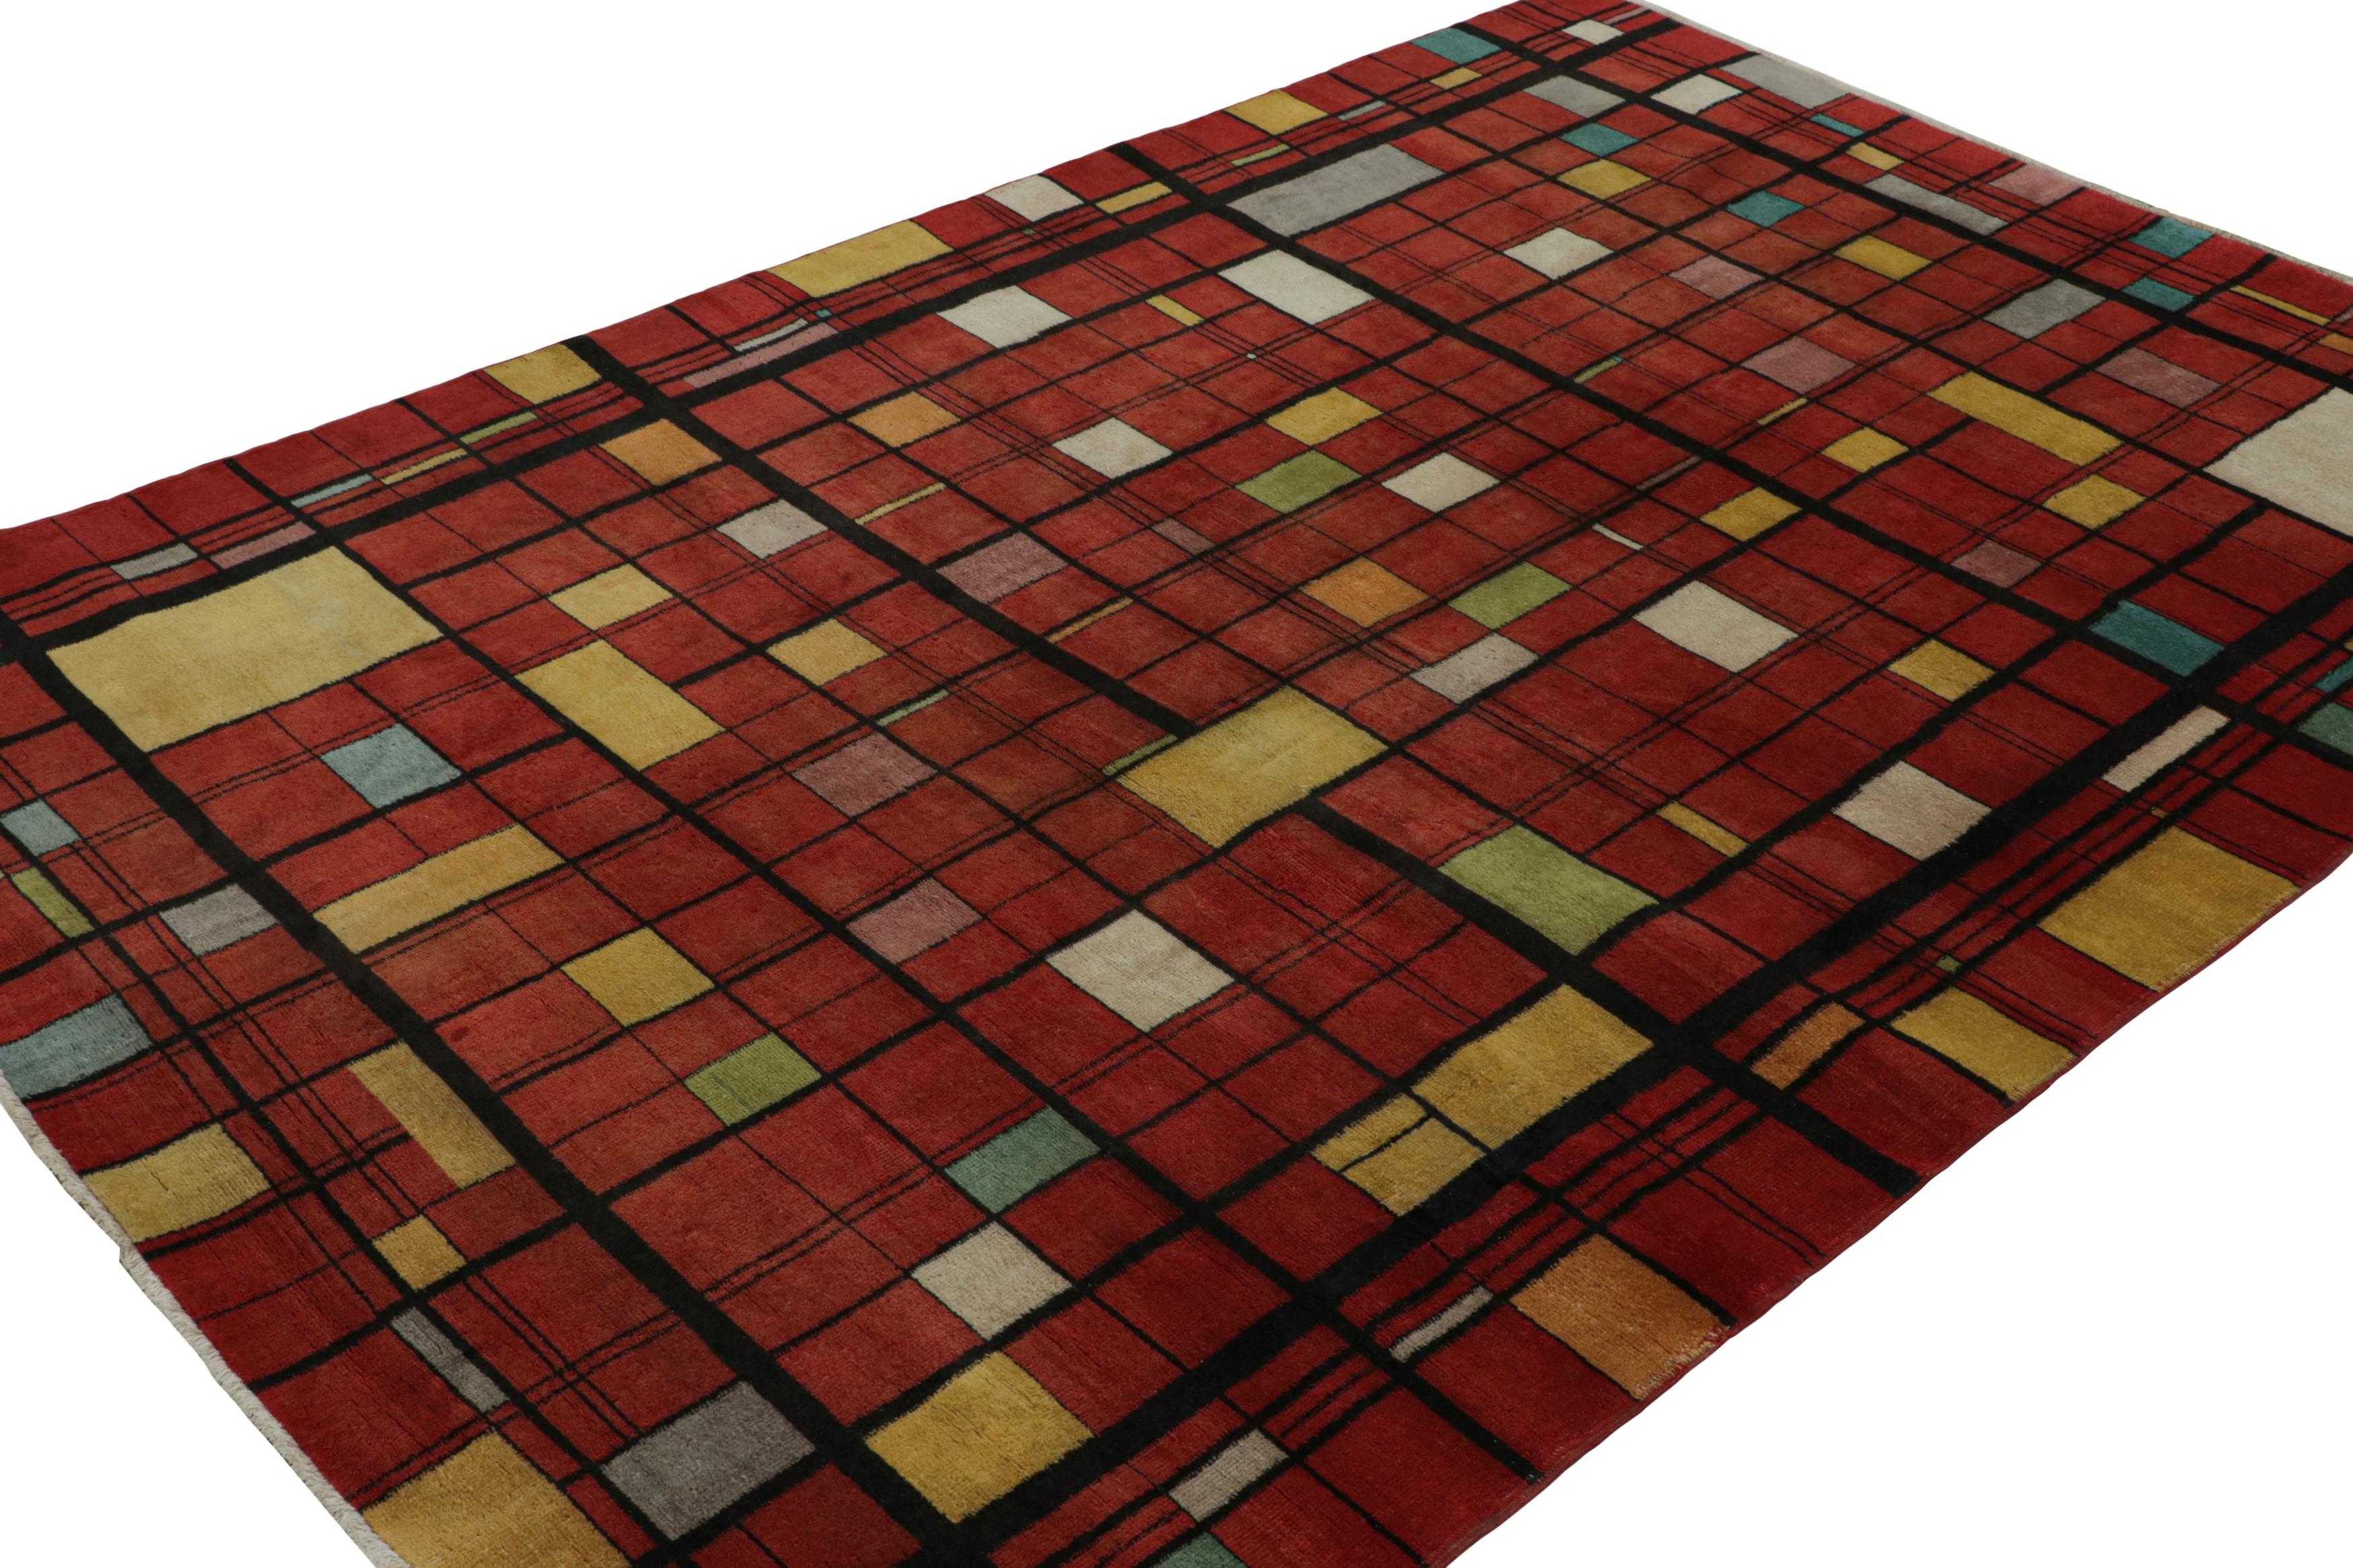 Noué à la main en laine, vers 1960 - 1970, ce tapis vintage 7x9 de Müren est une œuvre d'art ludique unique interprétant le style déco européen.

Sur le Design : 

Les connaisseurs apprécieront cette œuvre pour sa remarquable interprétation de